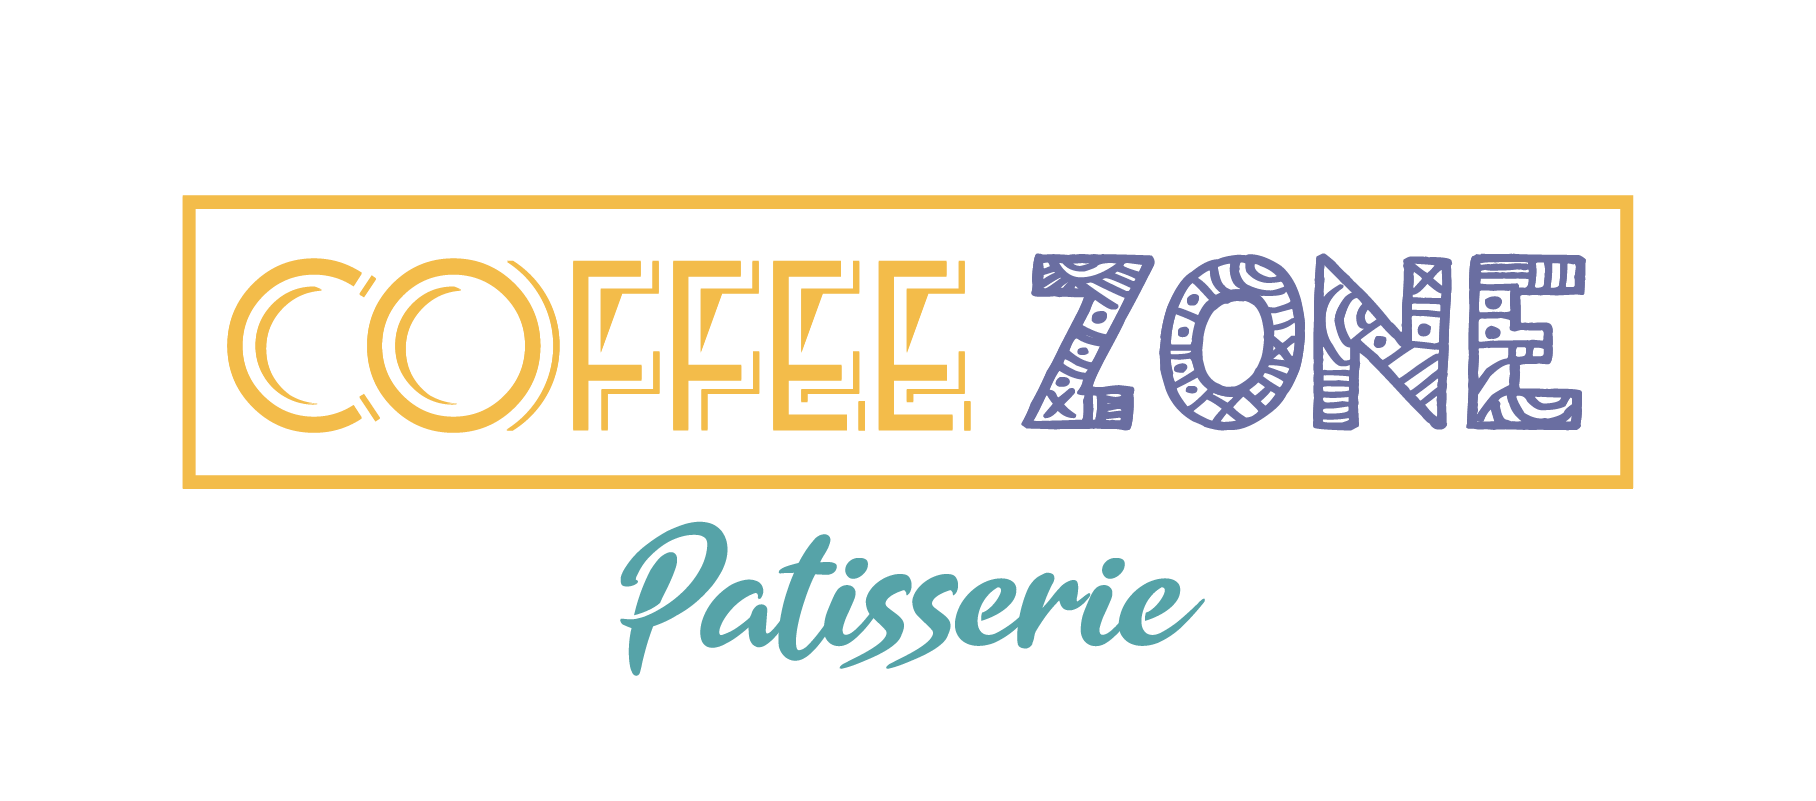 Coffee Zone Cafe